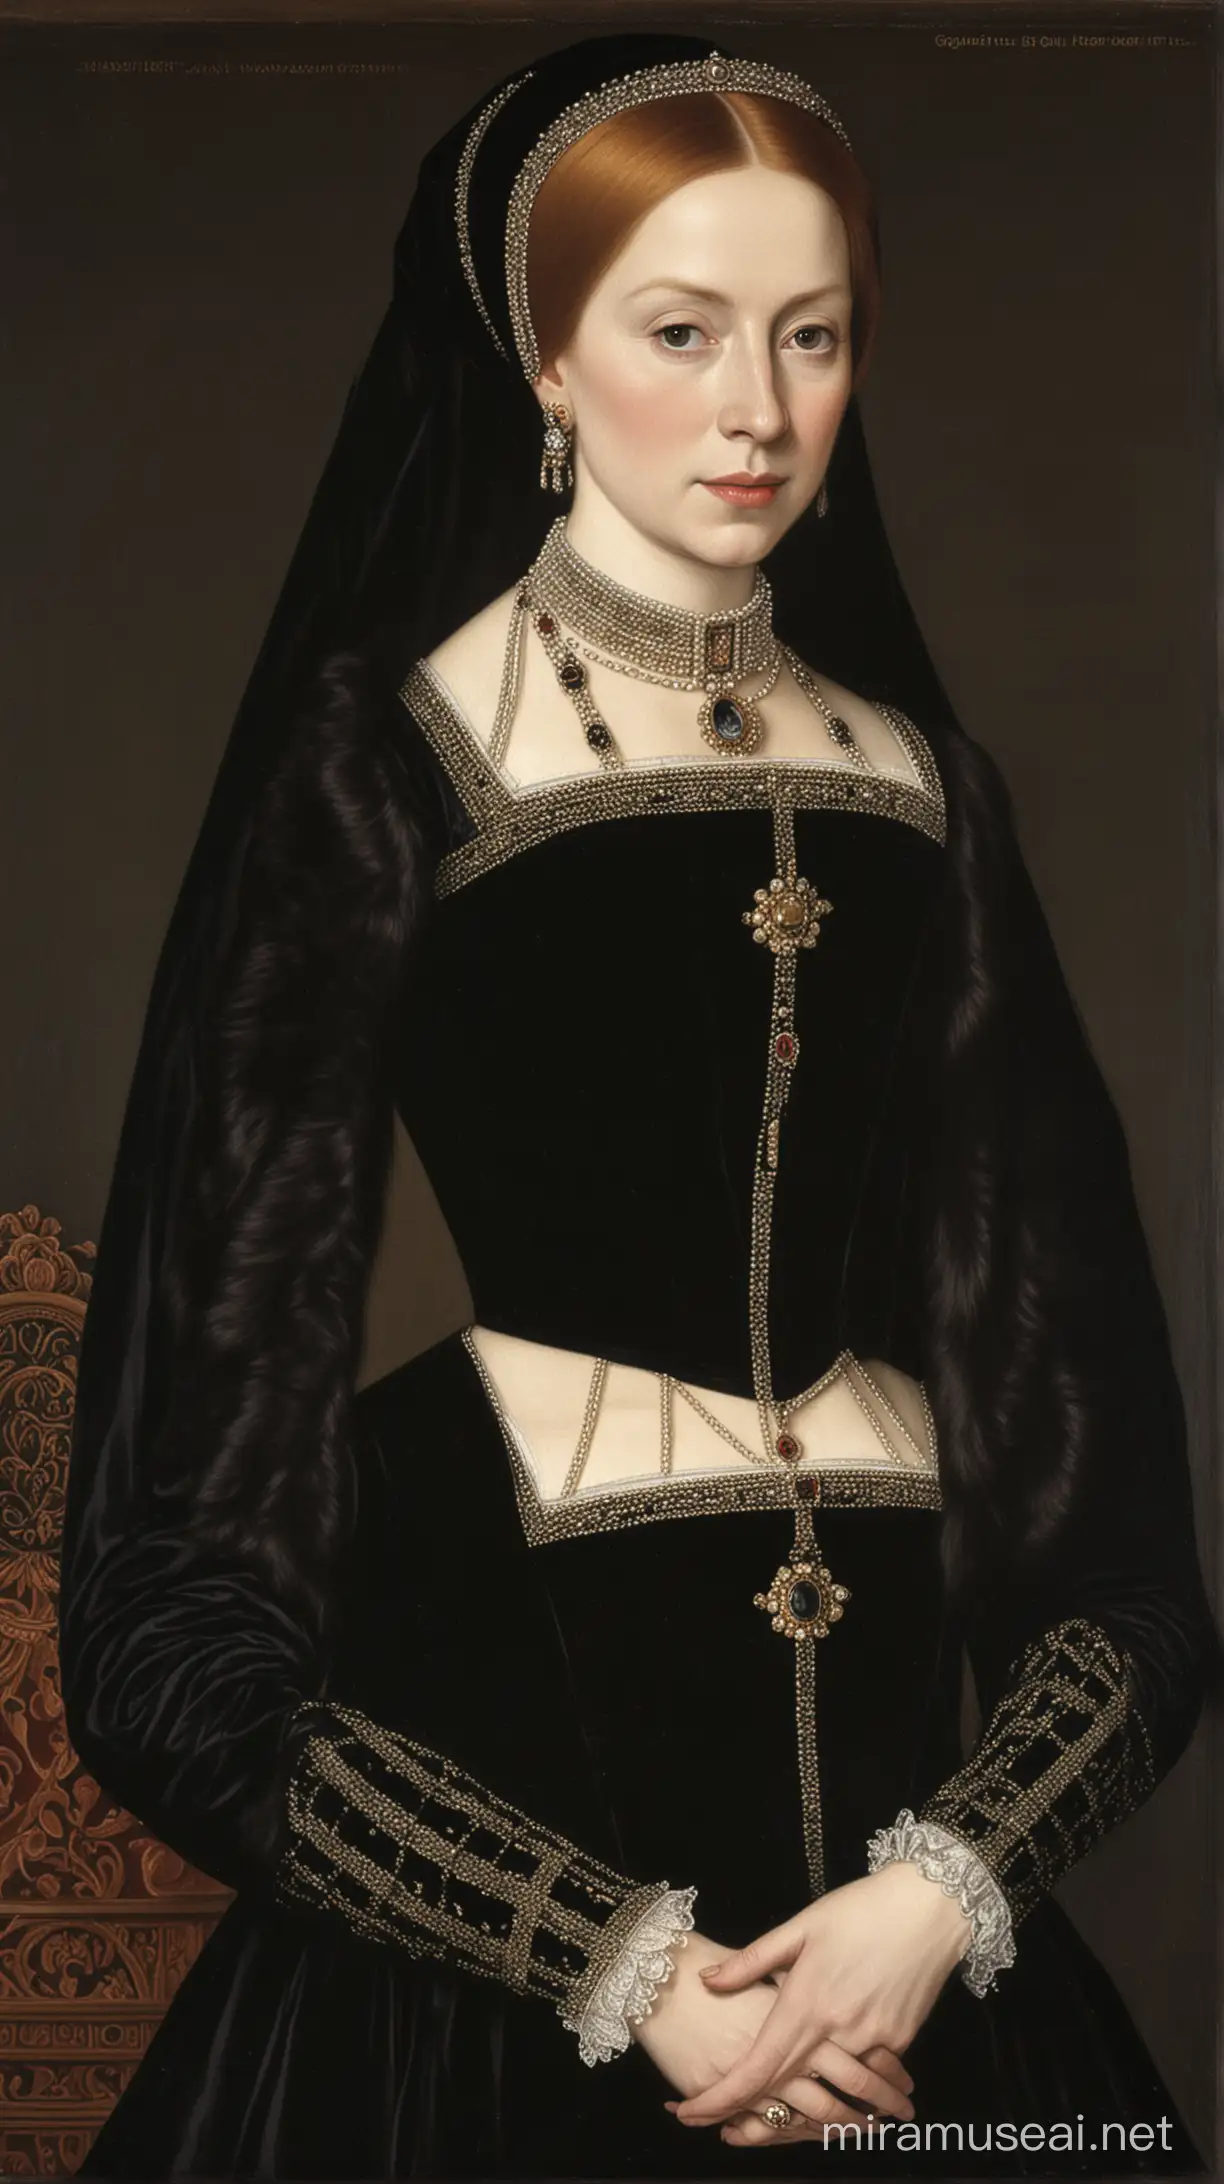 Portrait of Queen Mary Tudor in Elegant Black Attire